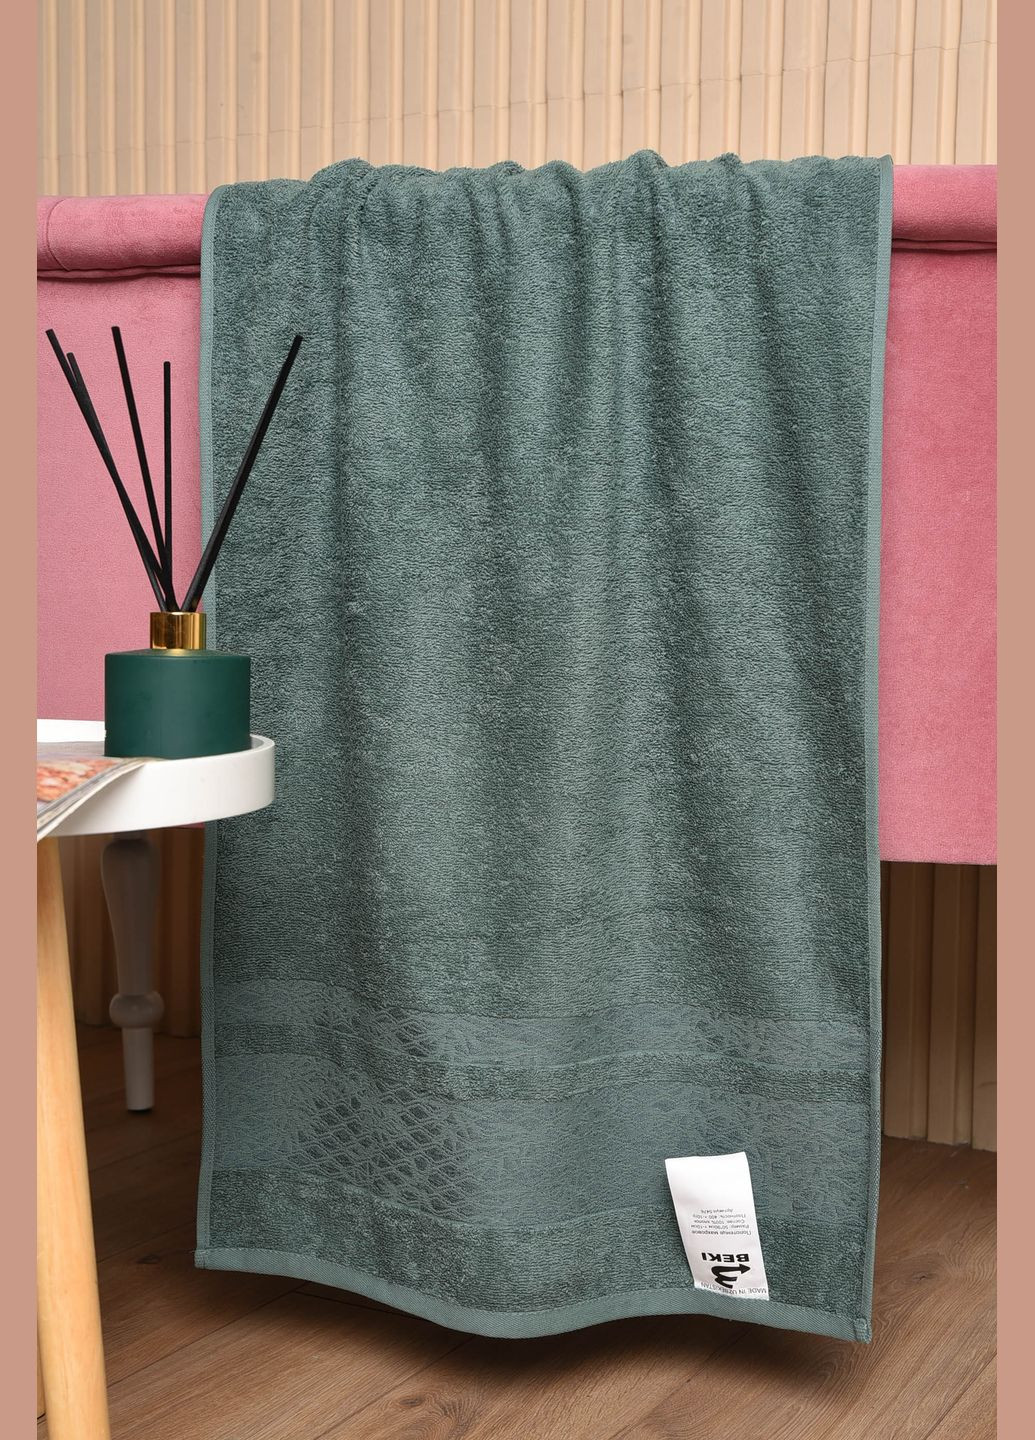 Let's Shop полотенце для лица махровое зеленого цвета однотонный зеленый производство - Узбекистан